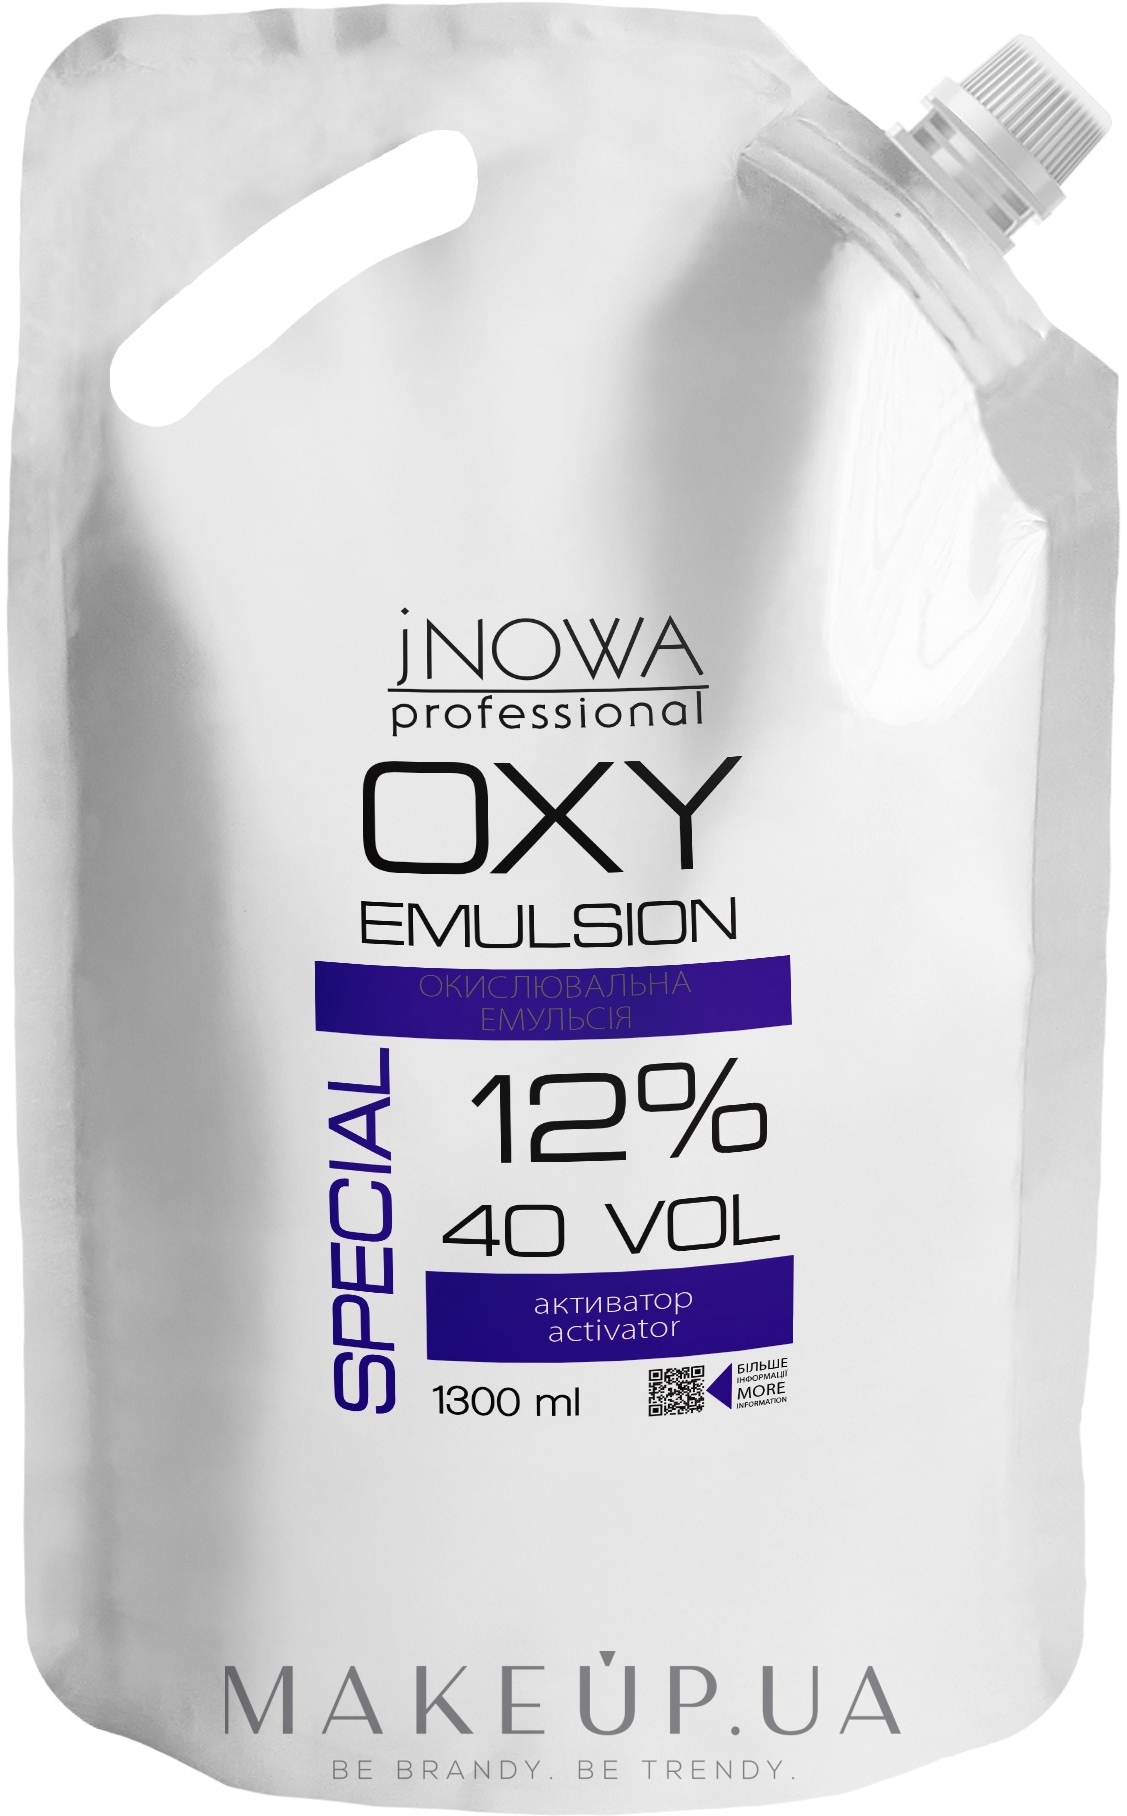 Окислительная эмульсия 12% - jNOWA Professional OXY Emulsion Special 40 vol (дой-пак) — фото 1300ml